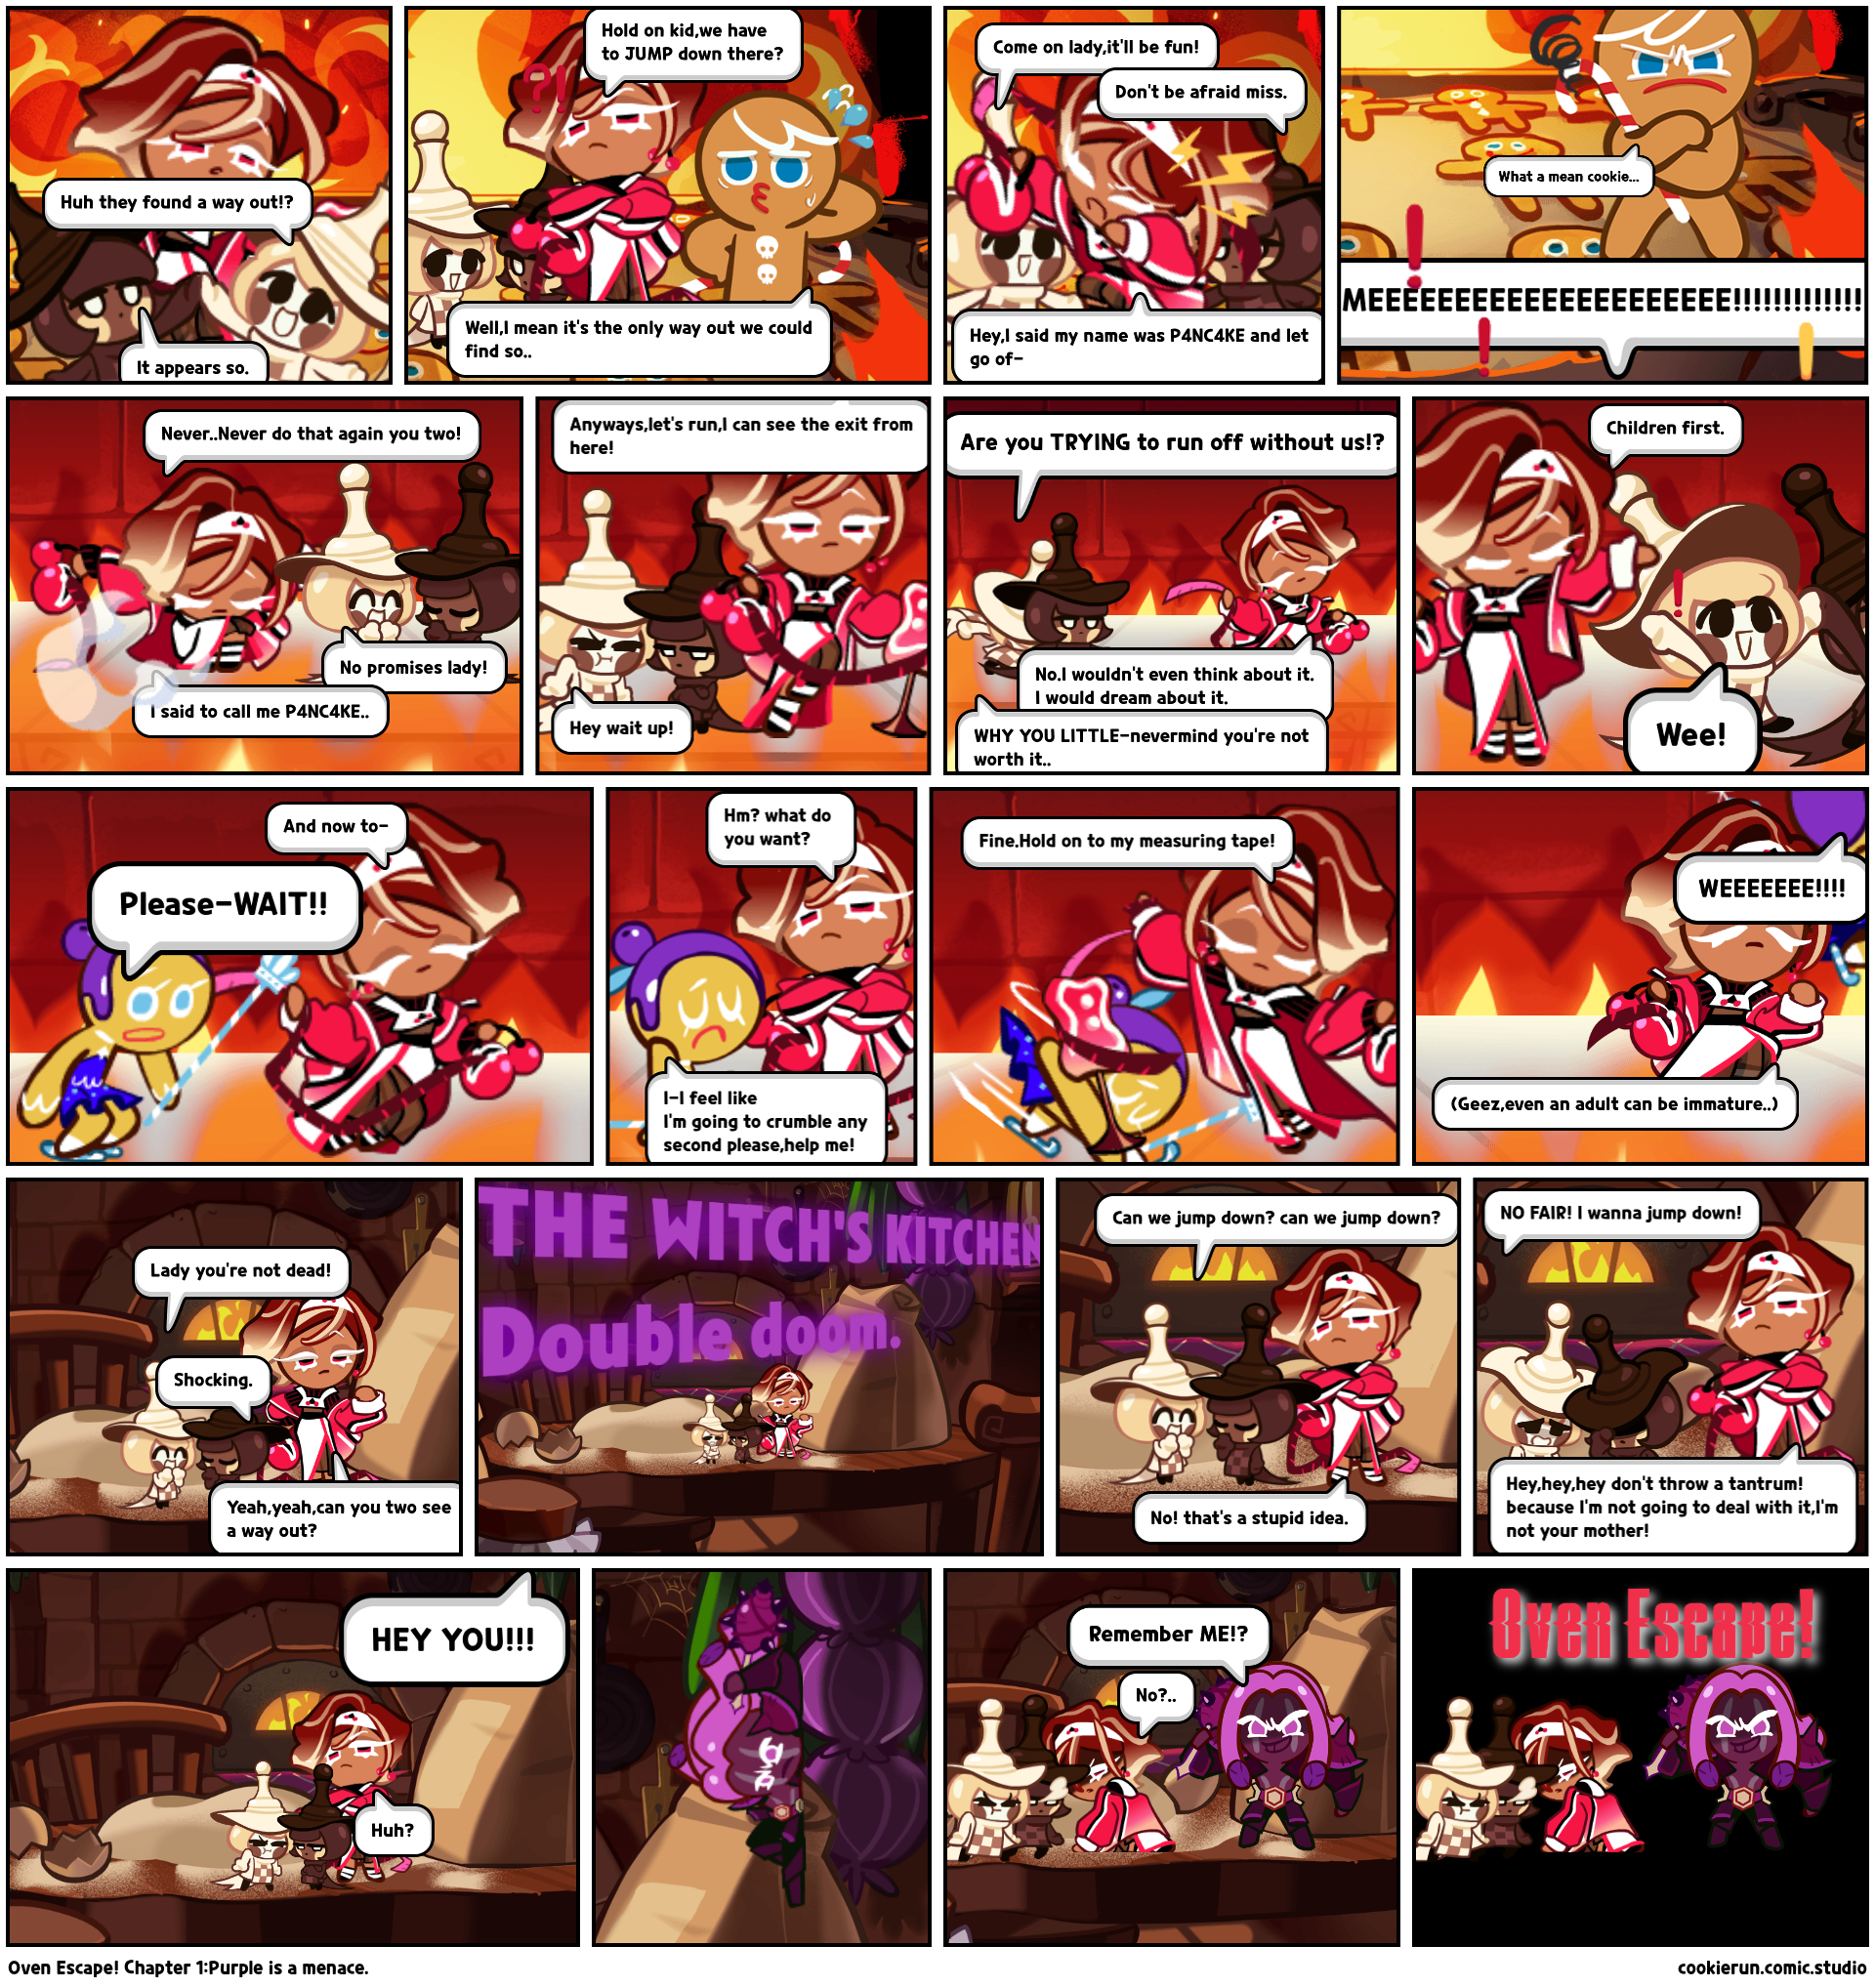 Oven Escape! Chapter 1:Purple is a menace.